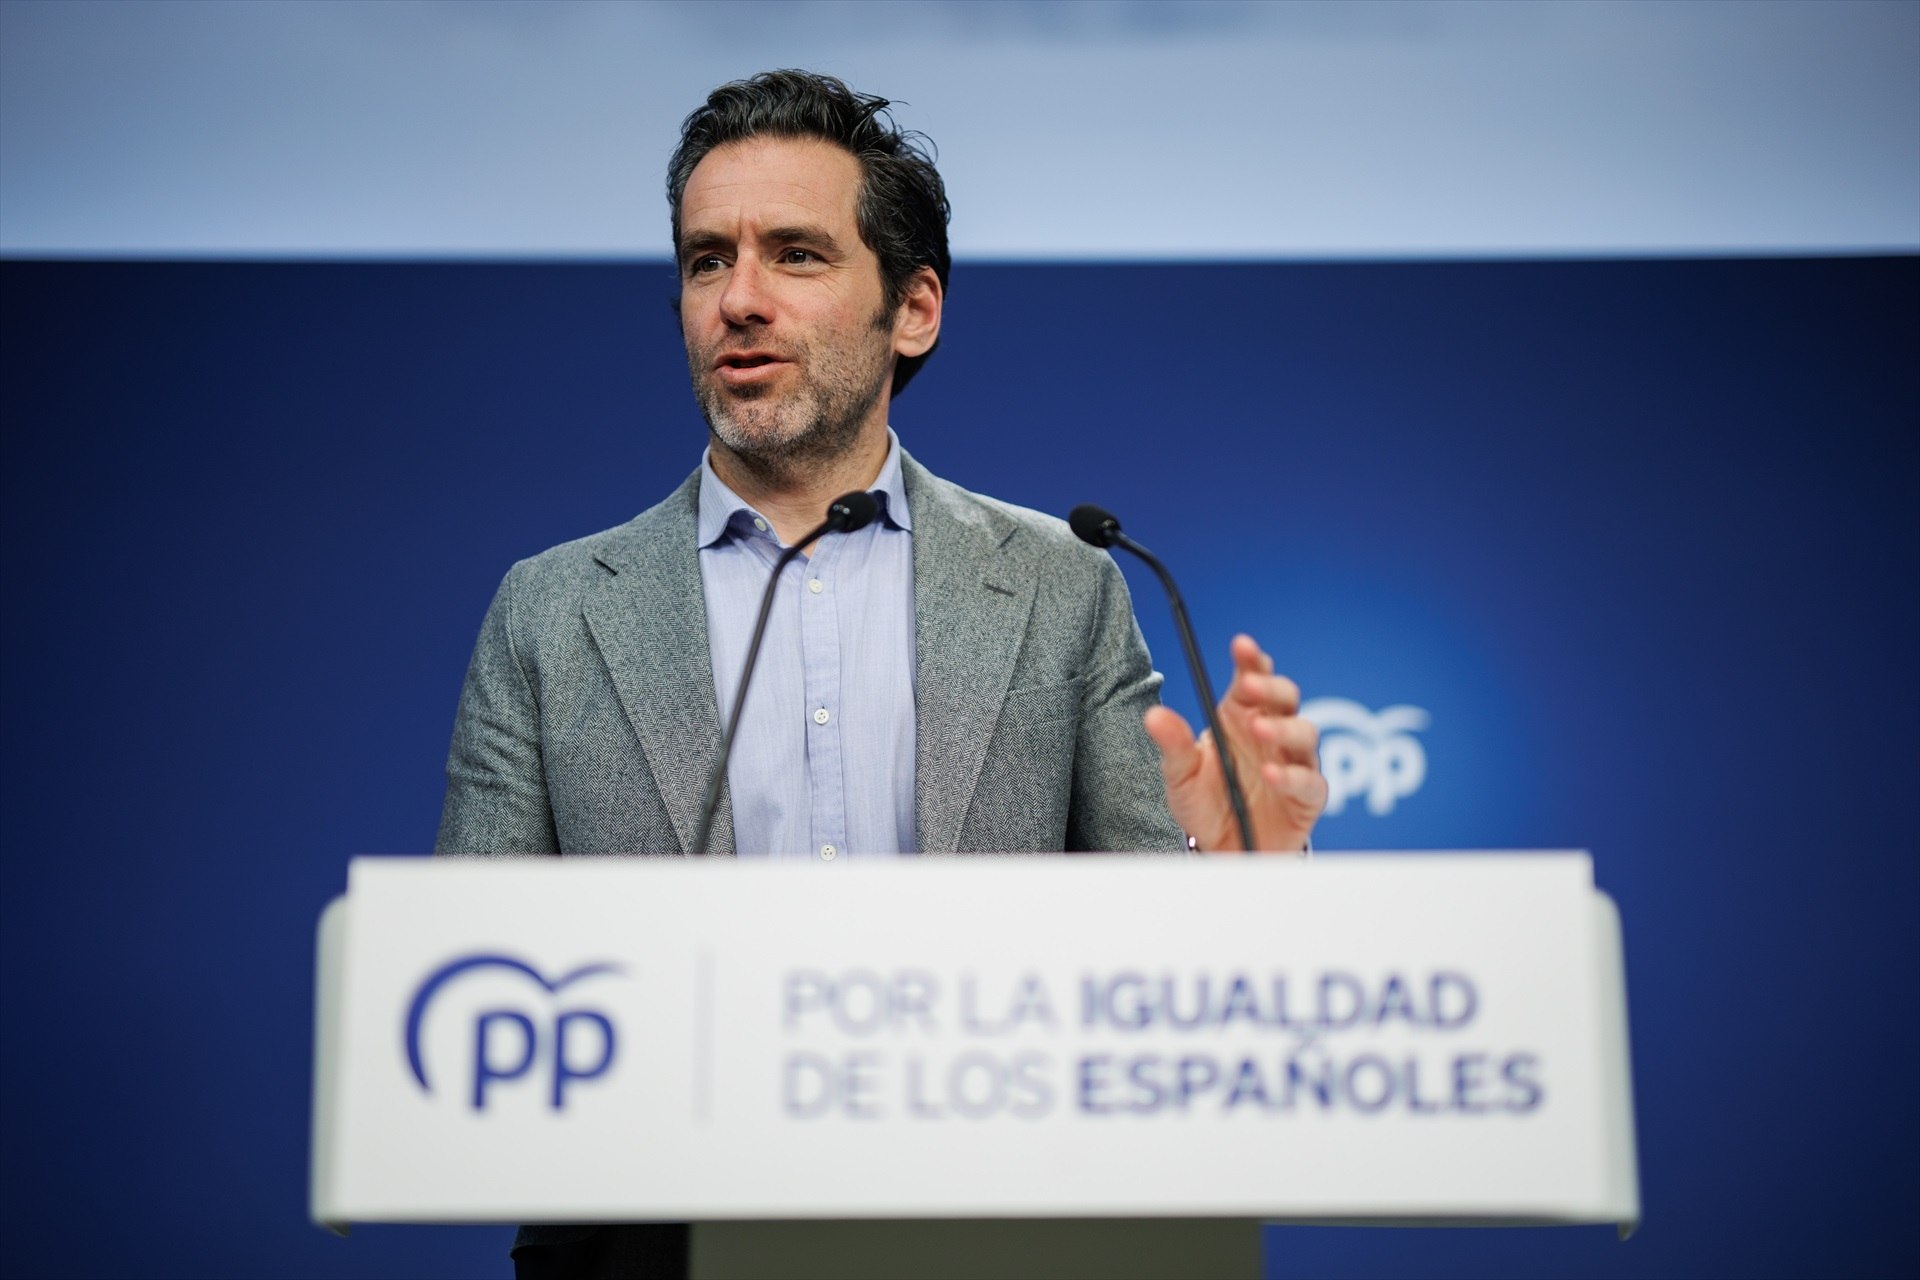 El PP presentarà mocions a tots els ajuntaments en contra de l'acord PSOE-Bildu a Pamplona